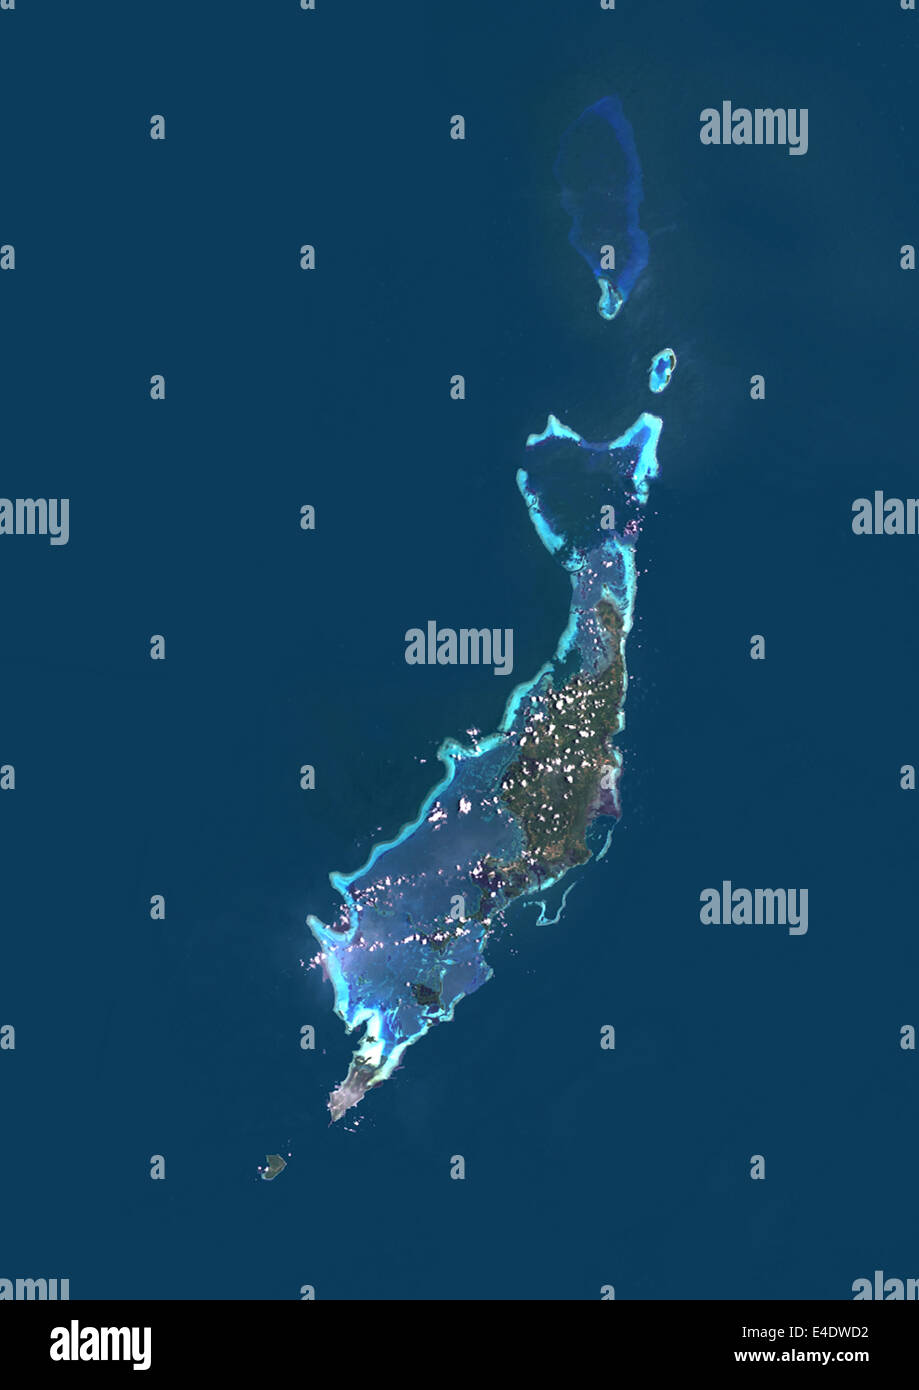 Palau map immagini e fotografie stock ad alta risoluzione - Alamy